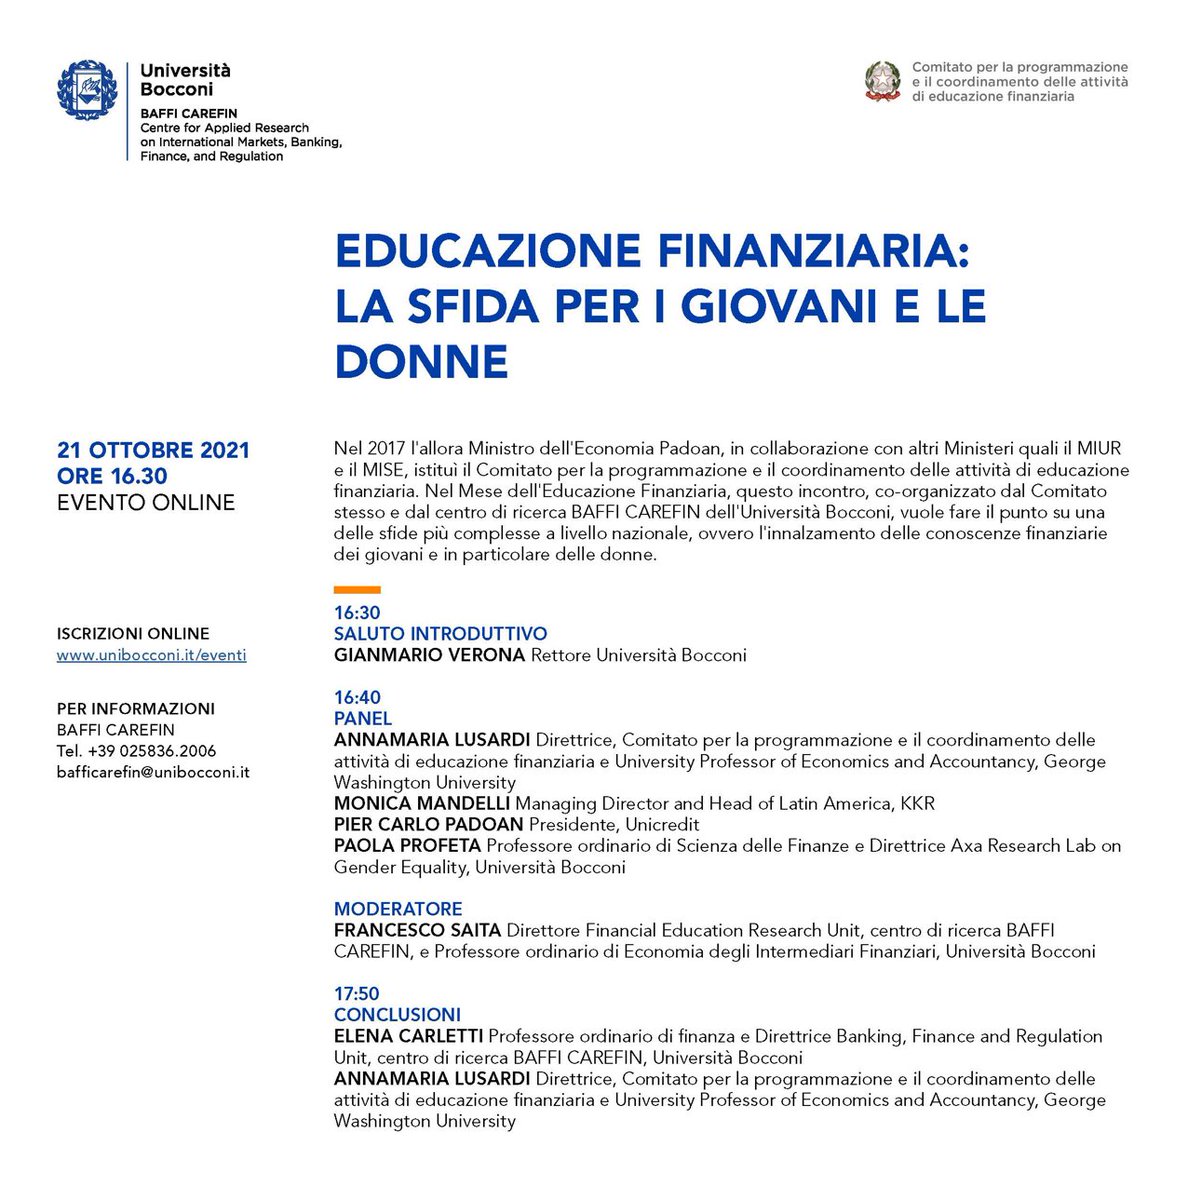 Oggi parliamo di Donne e Educazione Finanziaria ⁦@Unibocconi⁩ con ⁦@Dr_AnnaLusardi⁩ ⁦@ElenaCarletti7⁩ PierCarloPadoan ⁦@UniCredit_IT⁩ FrancescoSaita MonicaMandelli  ⁦@AxaGenderLab⁩